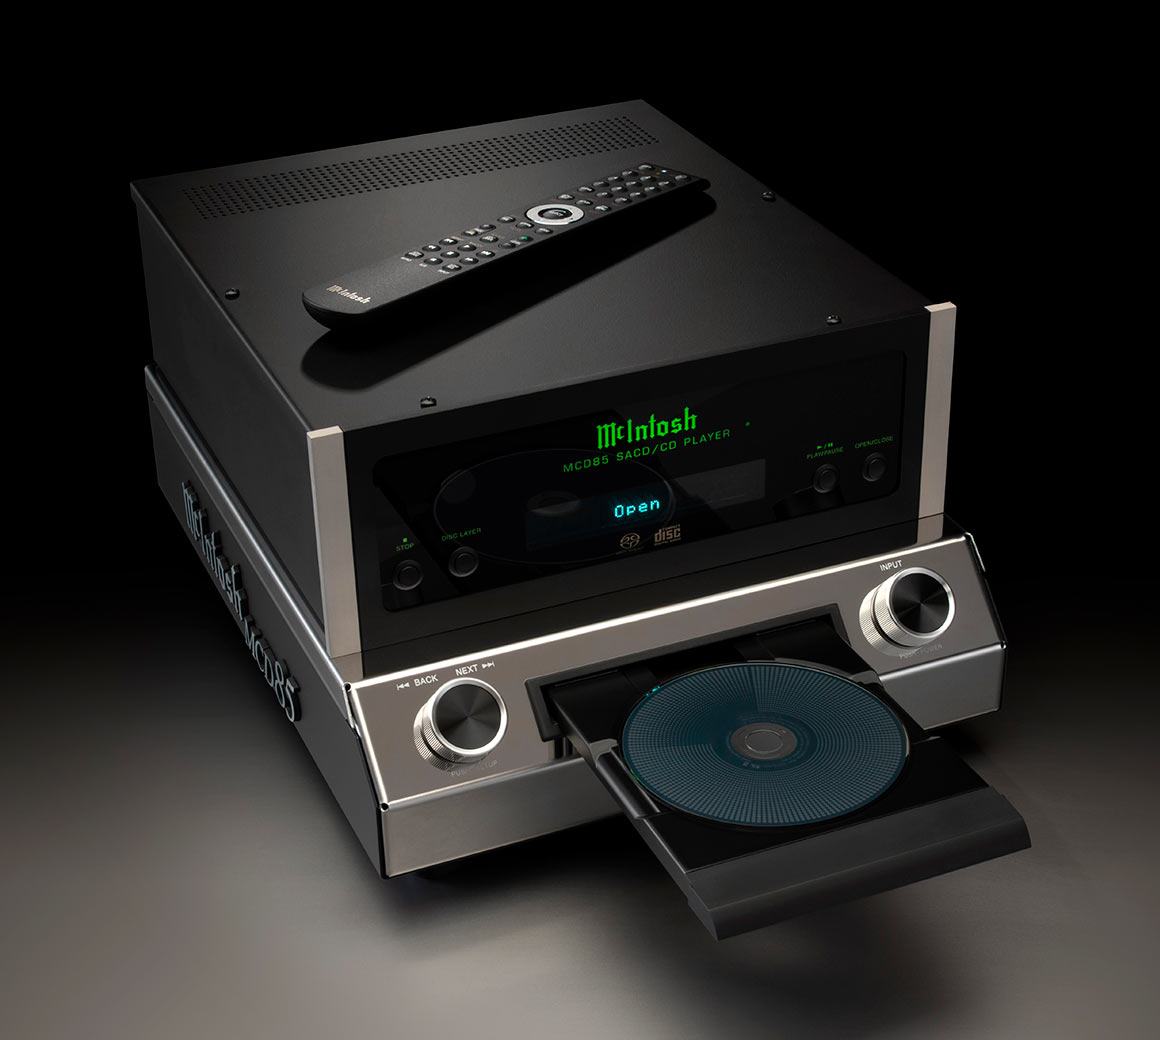 McIntosh presentó el reproductor de SACD/CD MCD85, una joya sonora incomparable